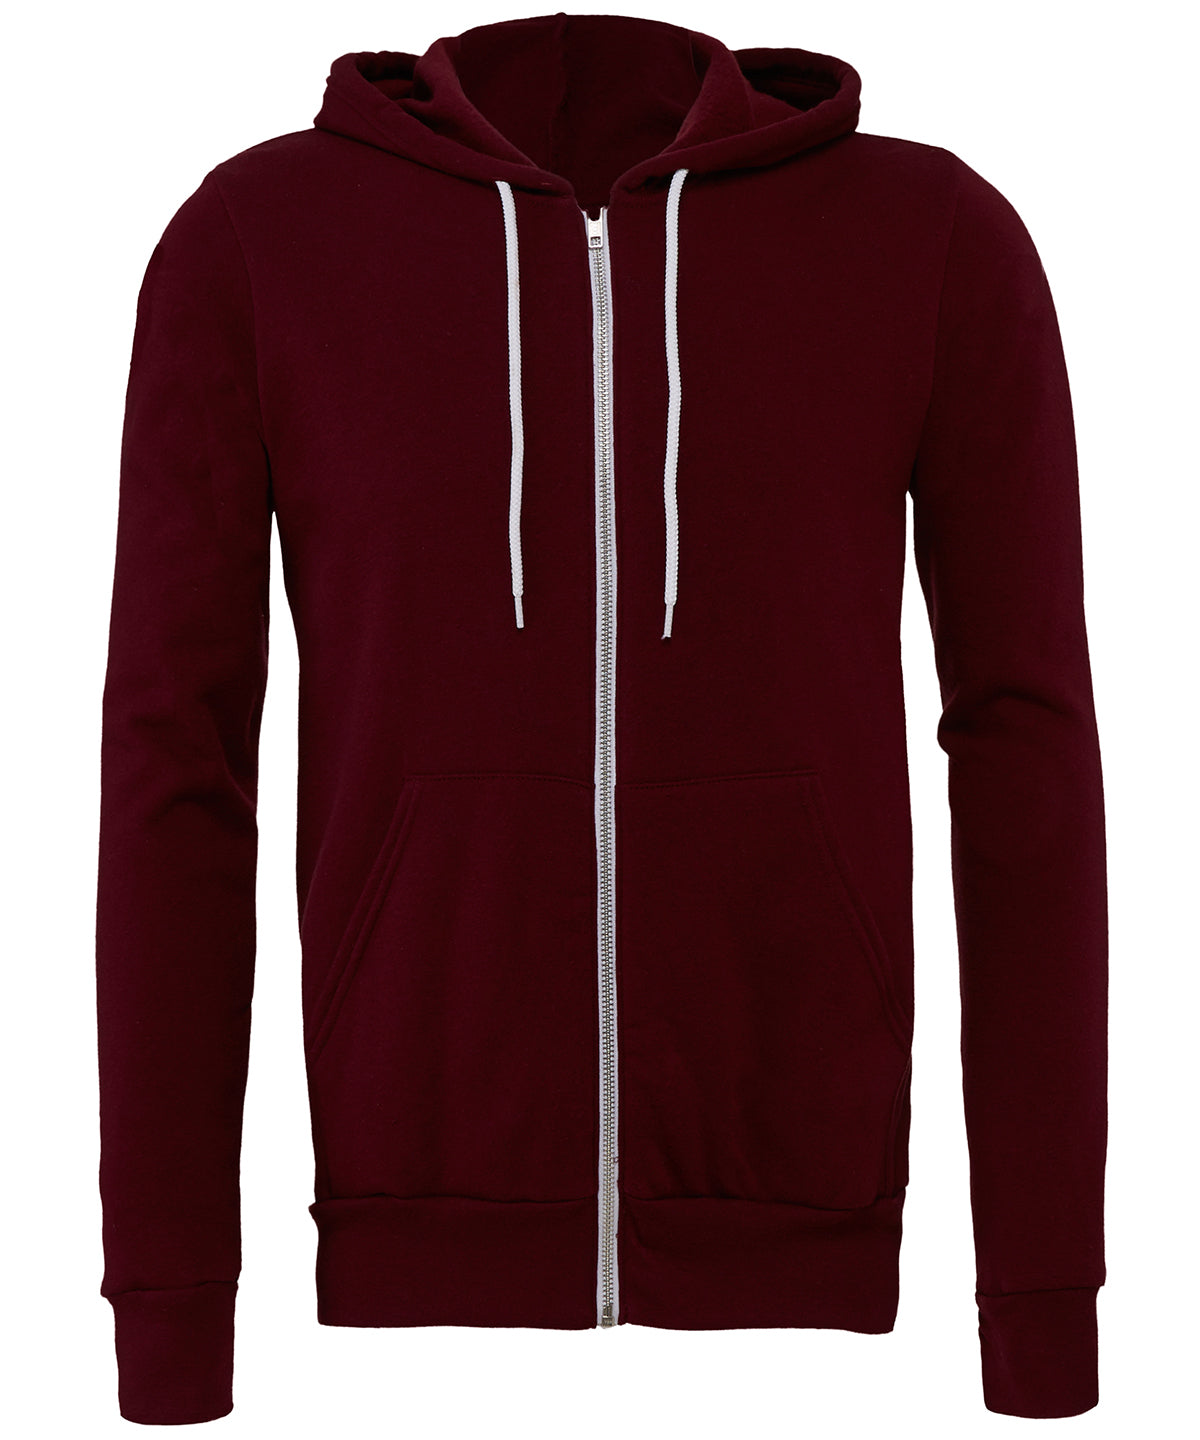 Personalised Hoodies - Mid Red Bella Canvas Unisex polycotton fleece full-zip hoodie